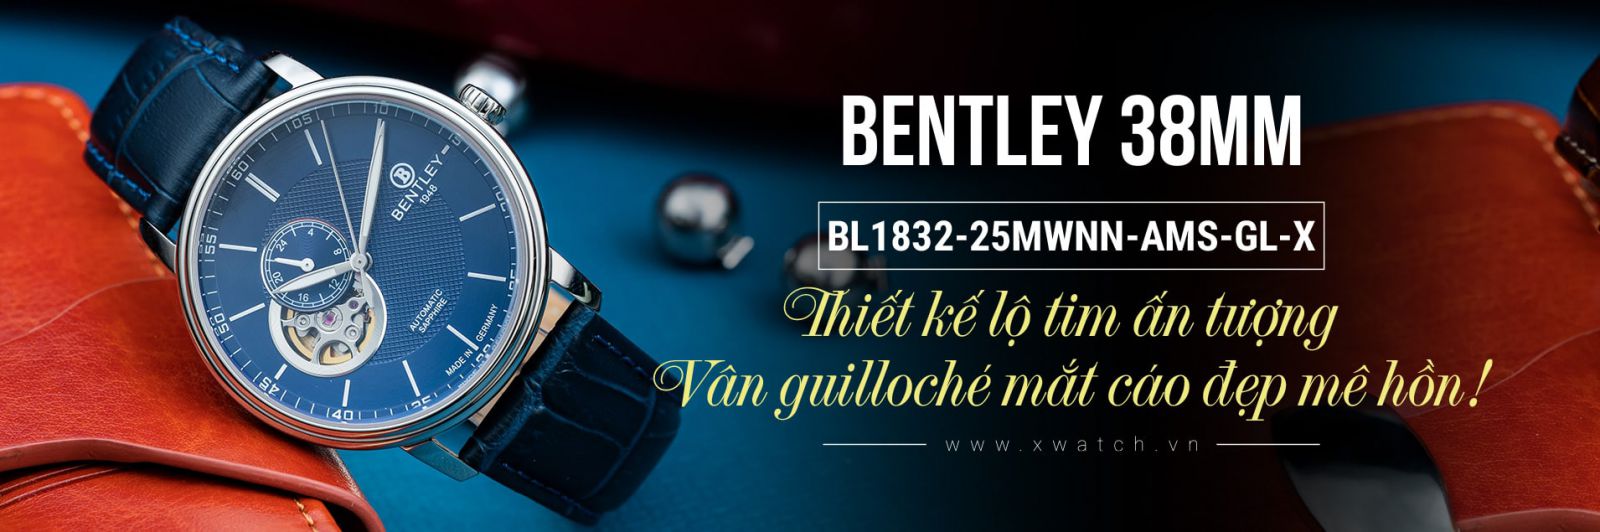 Đồng hồ Bentley BL1832-25MWNN-AMS-GL-X